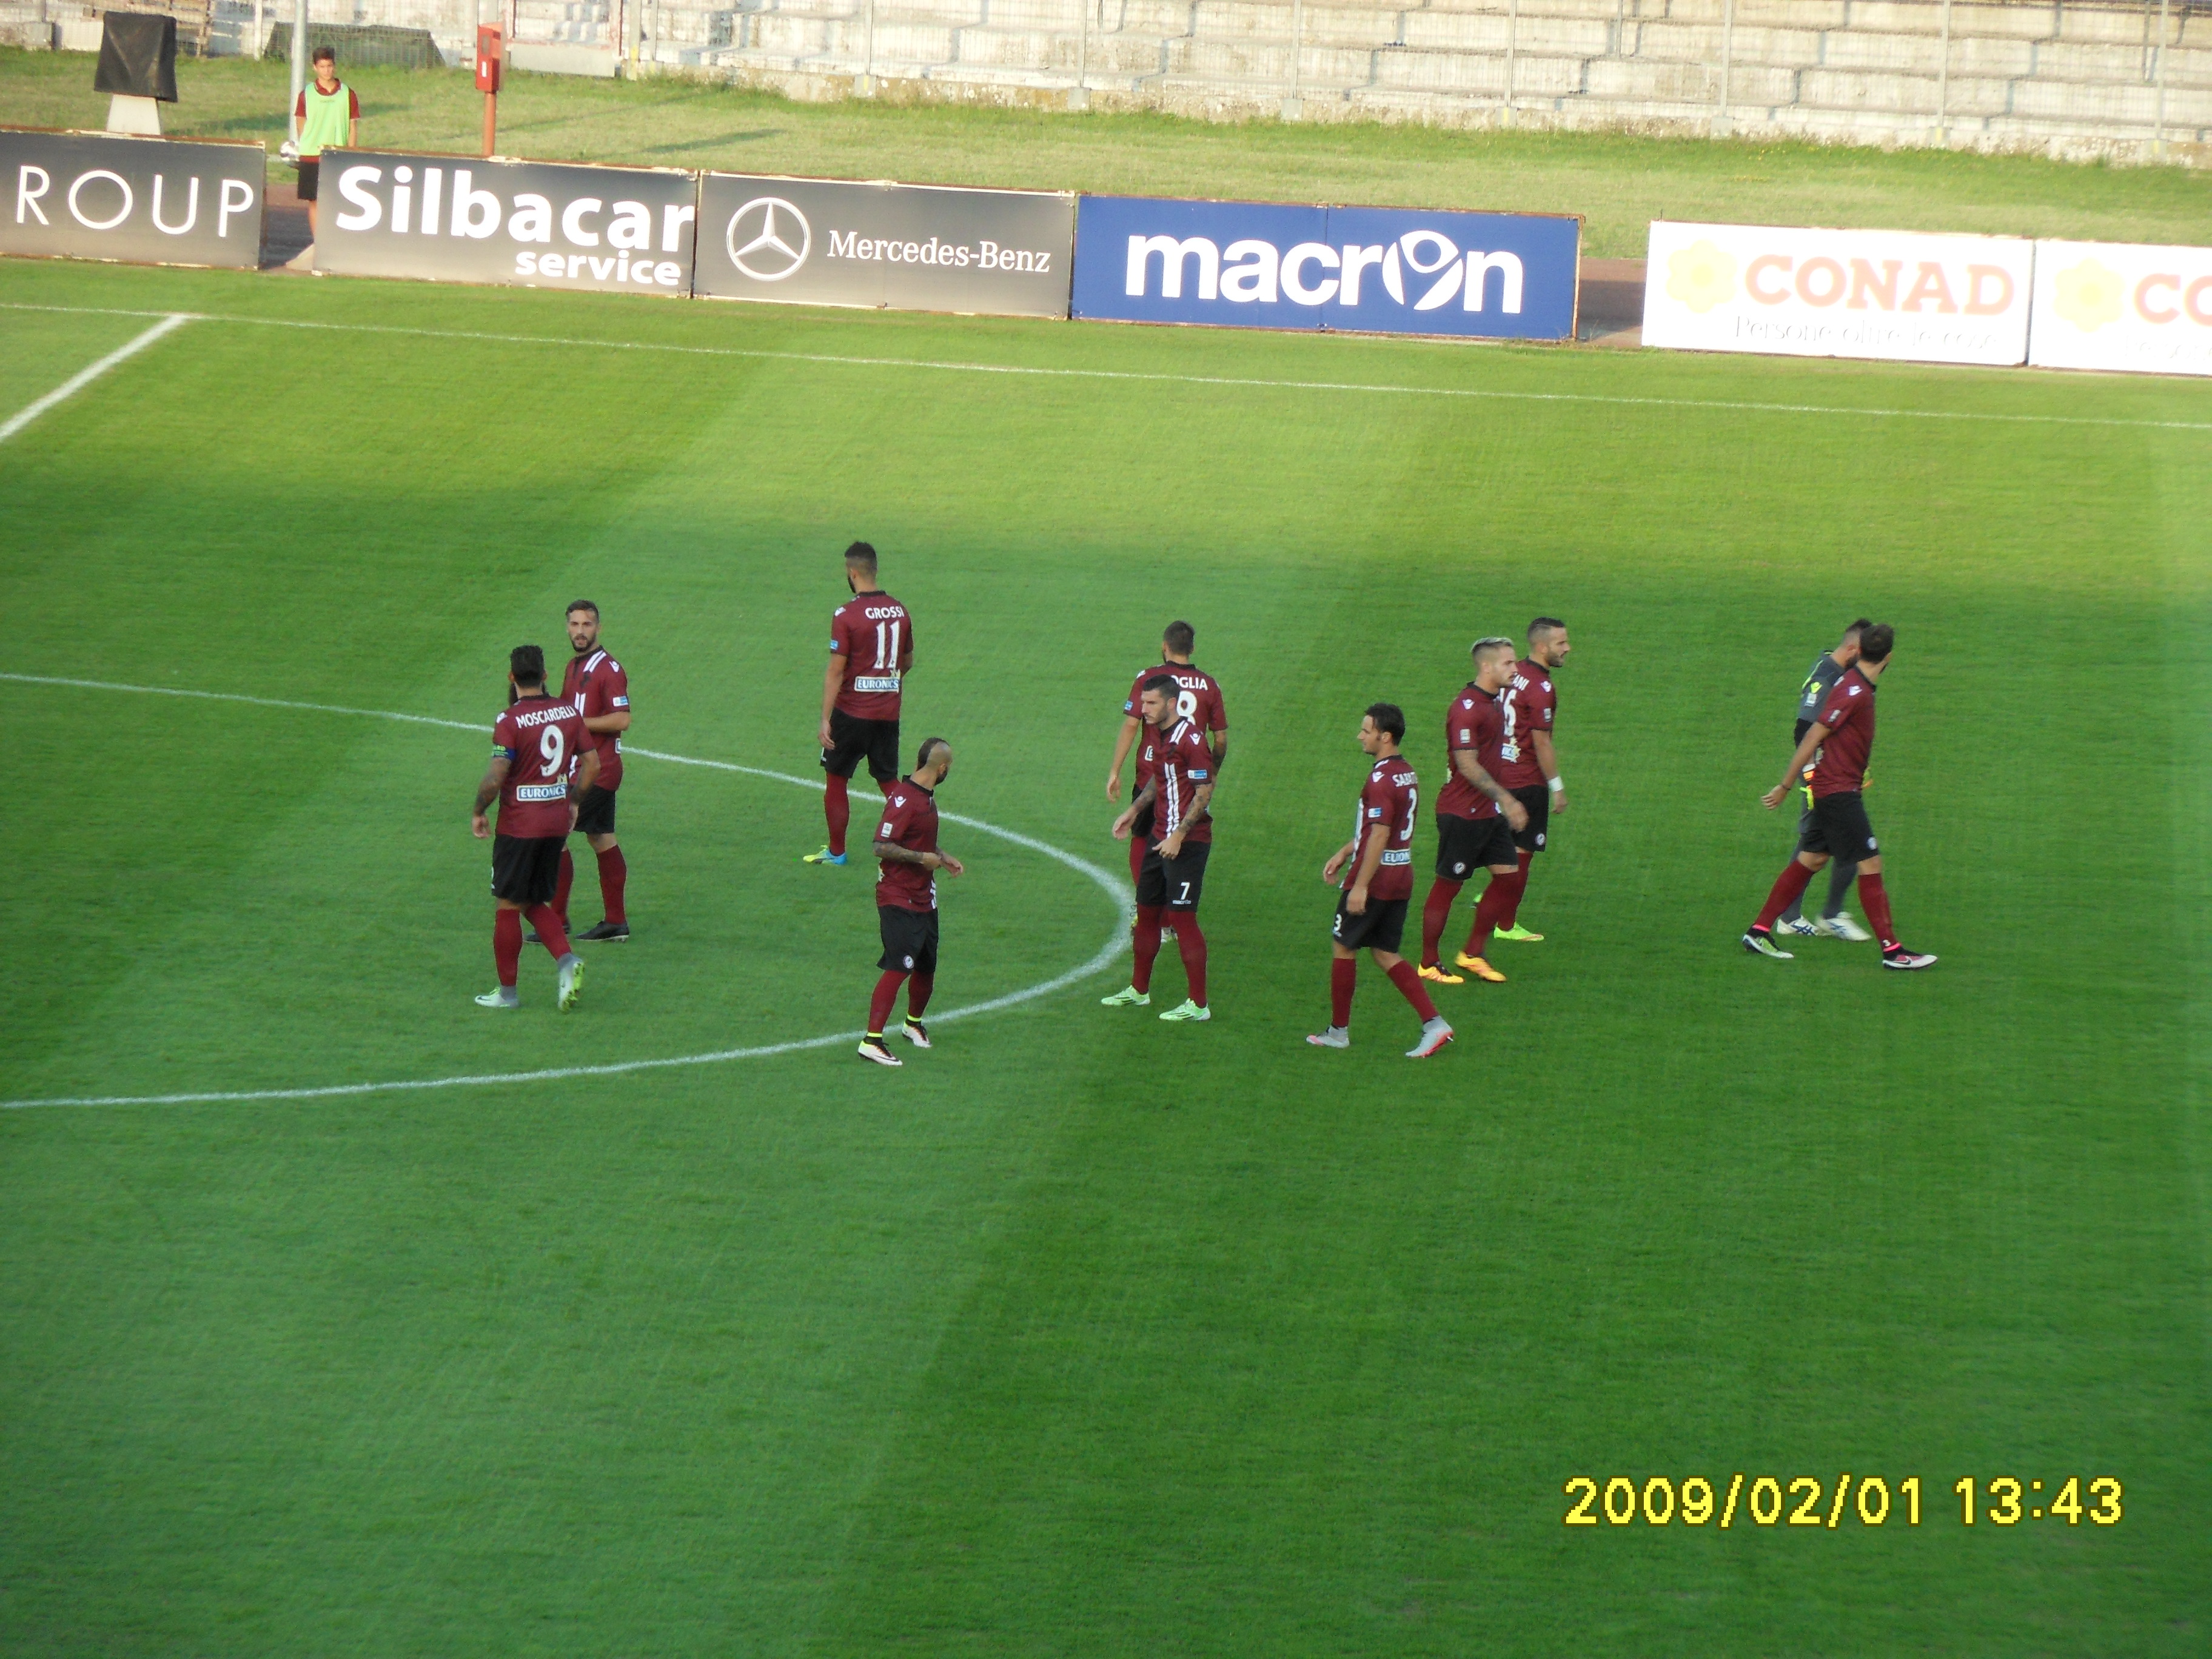 Arezzo – Olbia 0 – 1 fine primo tempo